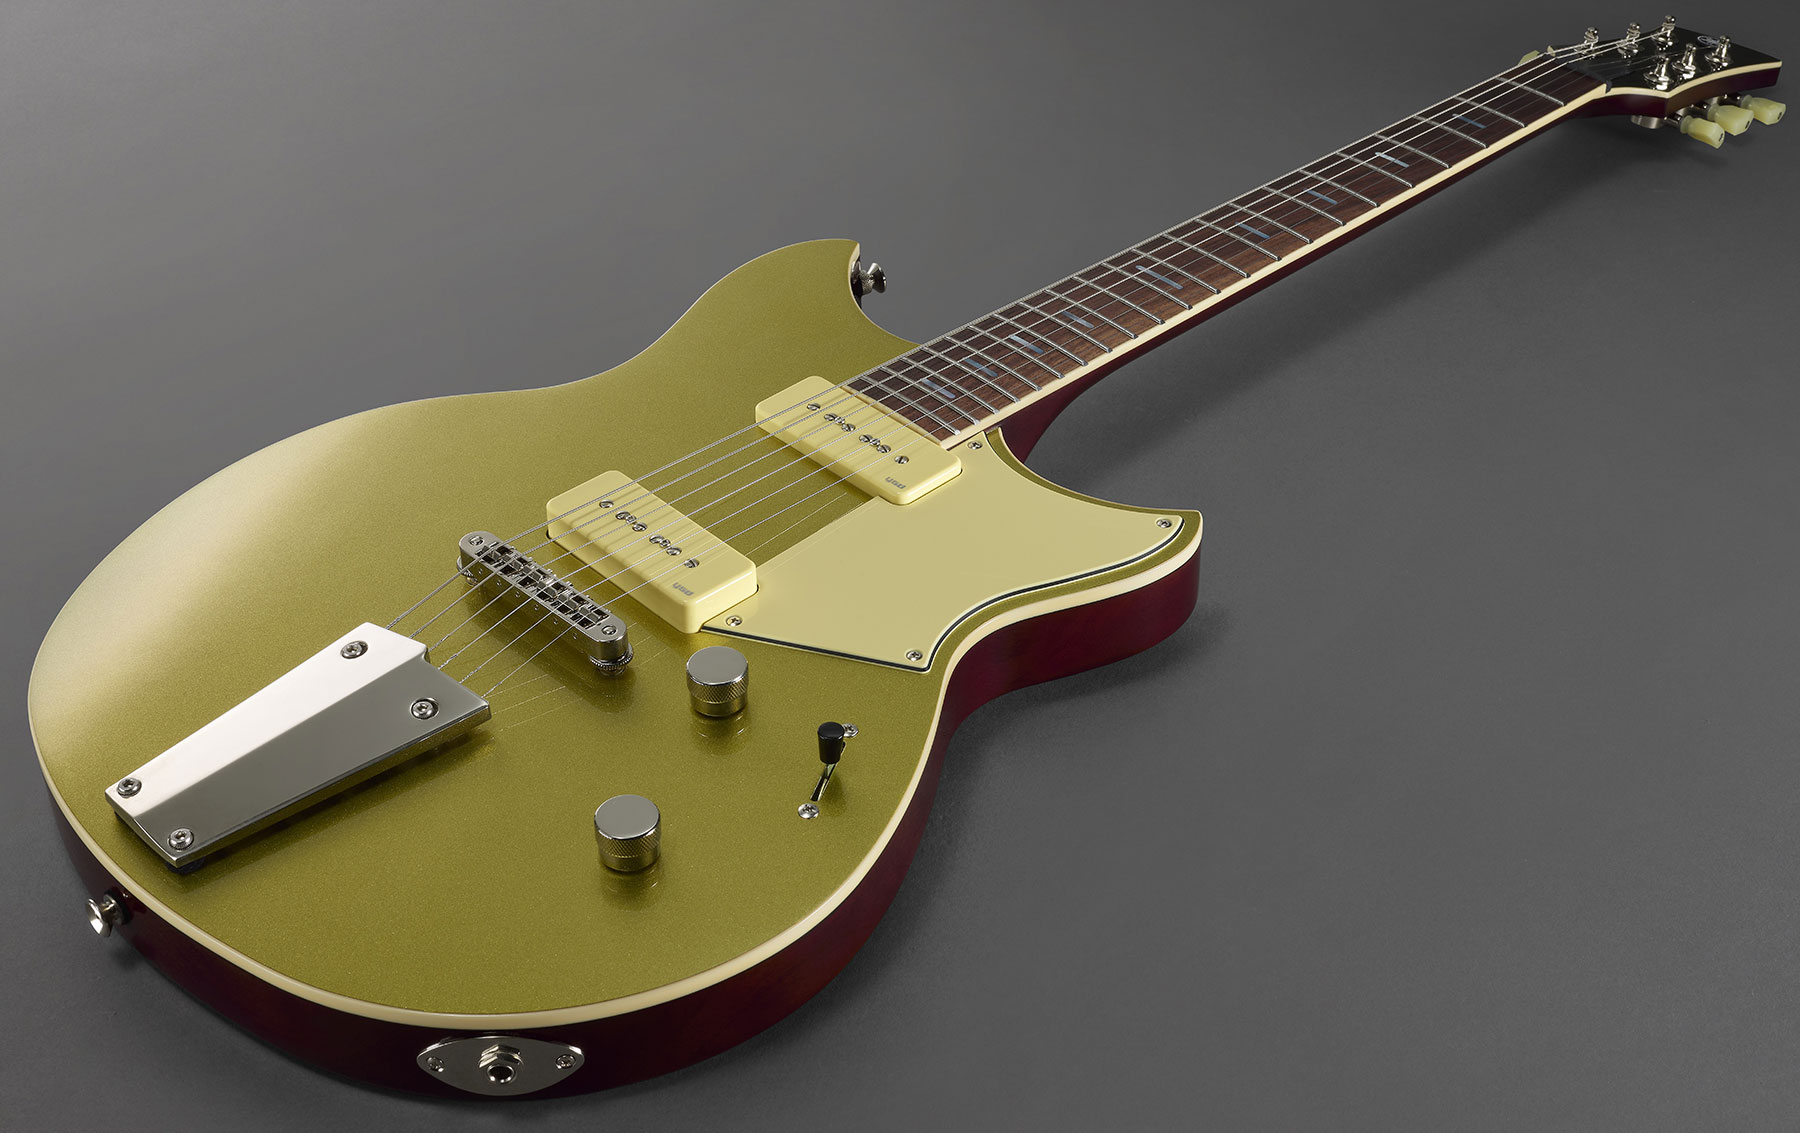 Yamaha Rsp02t Revstar Professionnal Jap 2p90 Ht Rw - Crisp Gold - Double Cut E-Gitarre - Variation 3